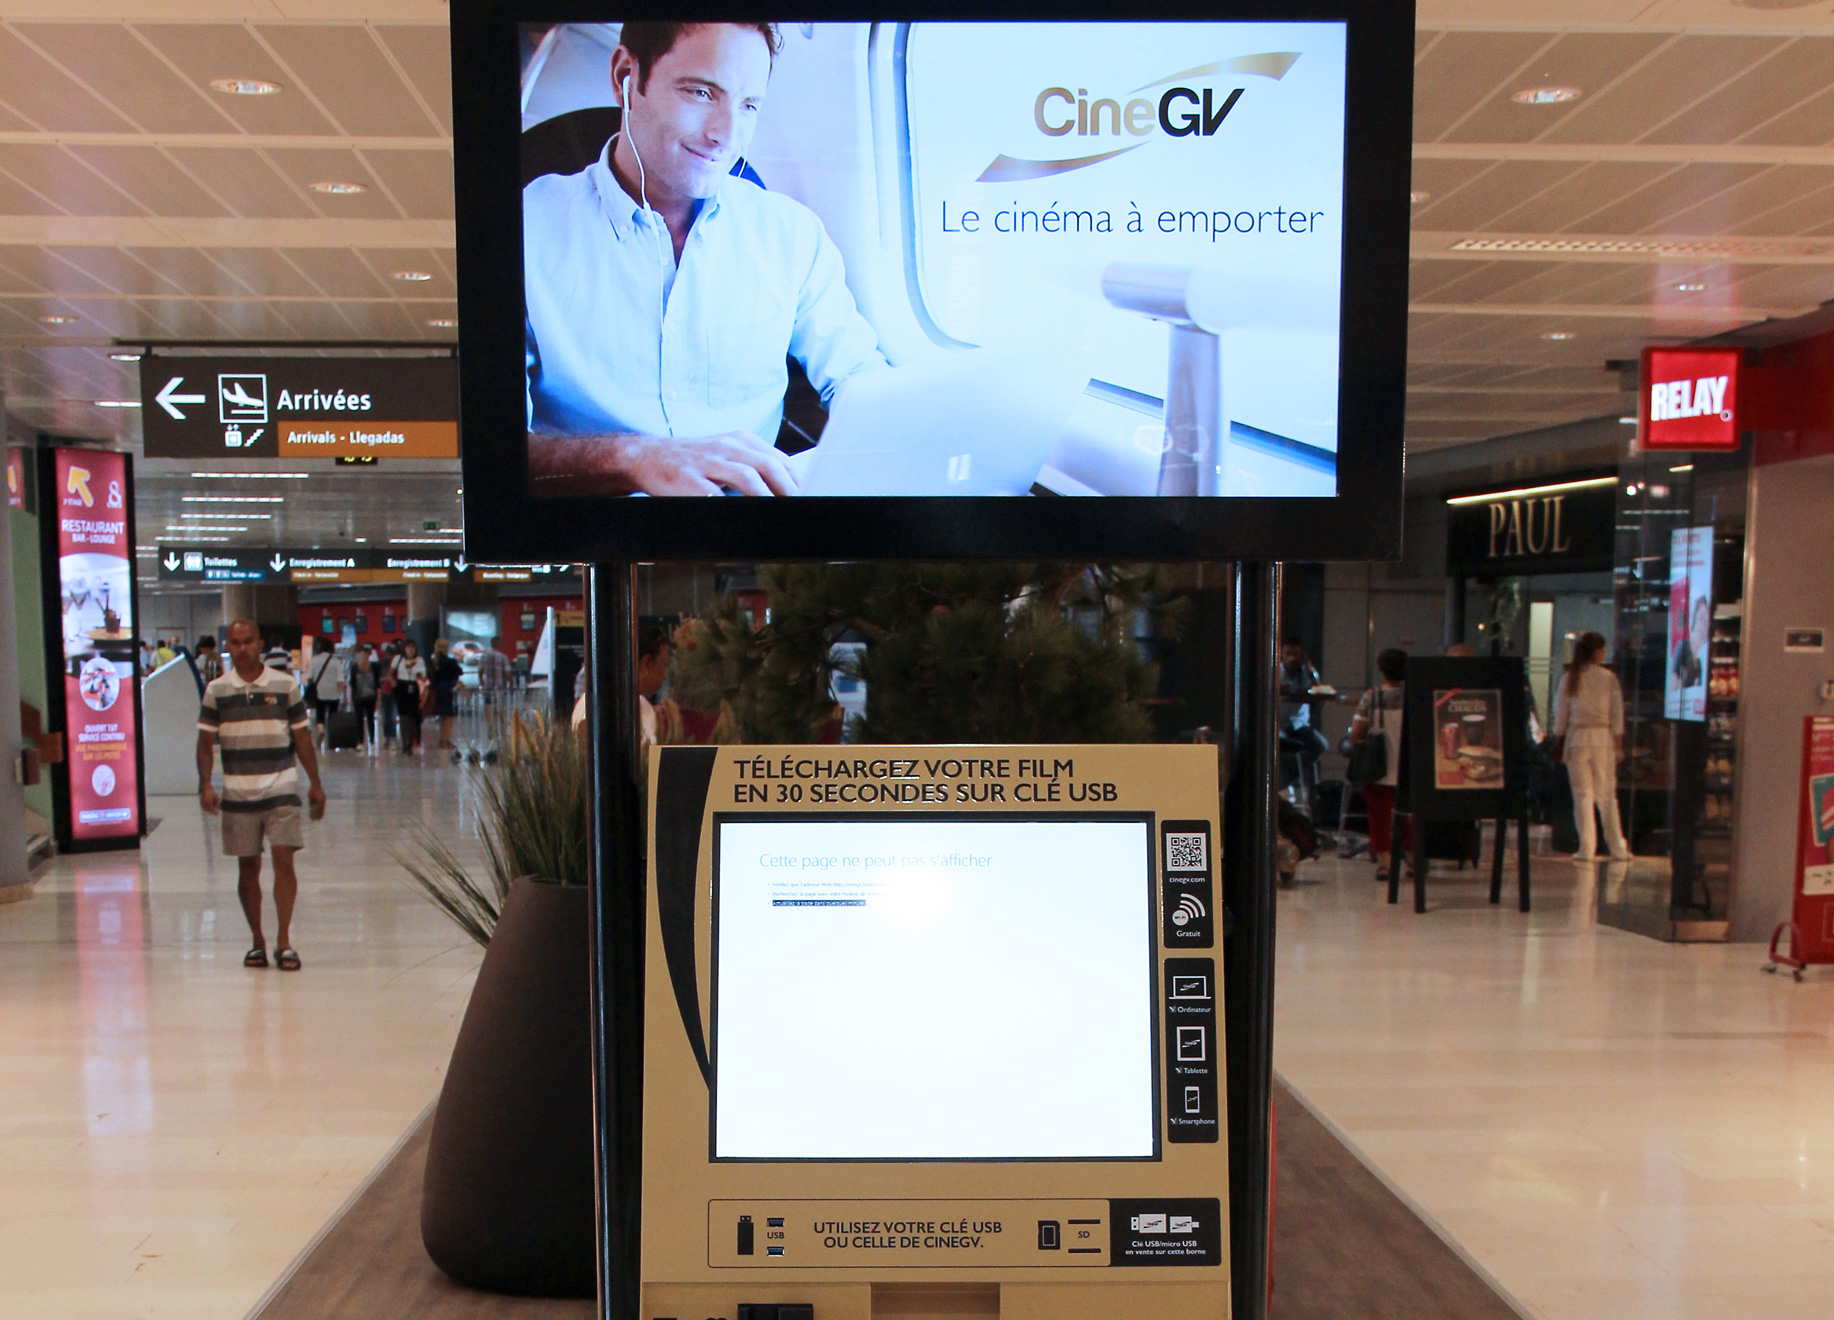 L’aéroport de Toulouse propose le téléchargement de films